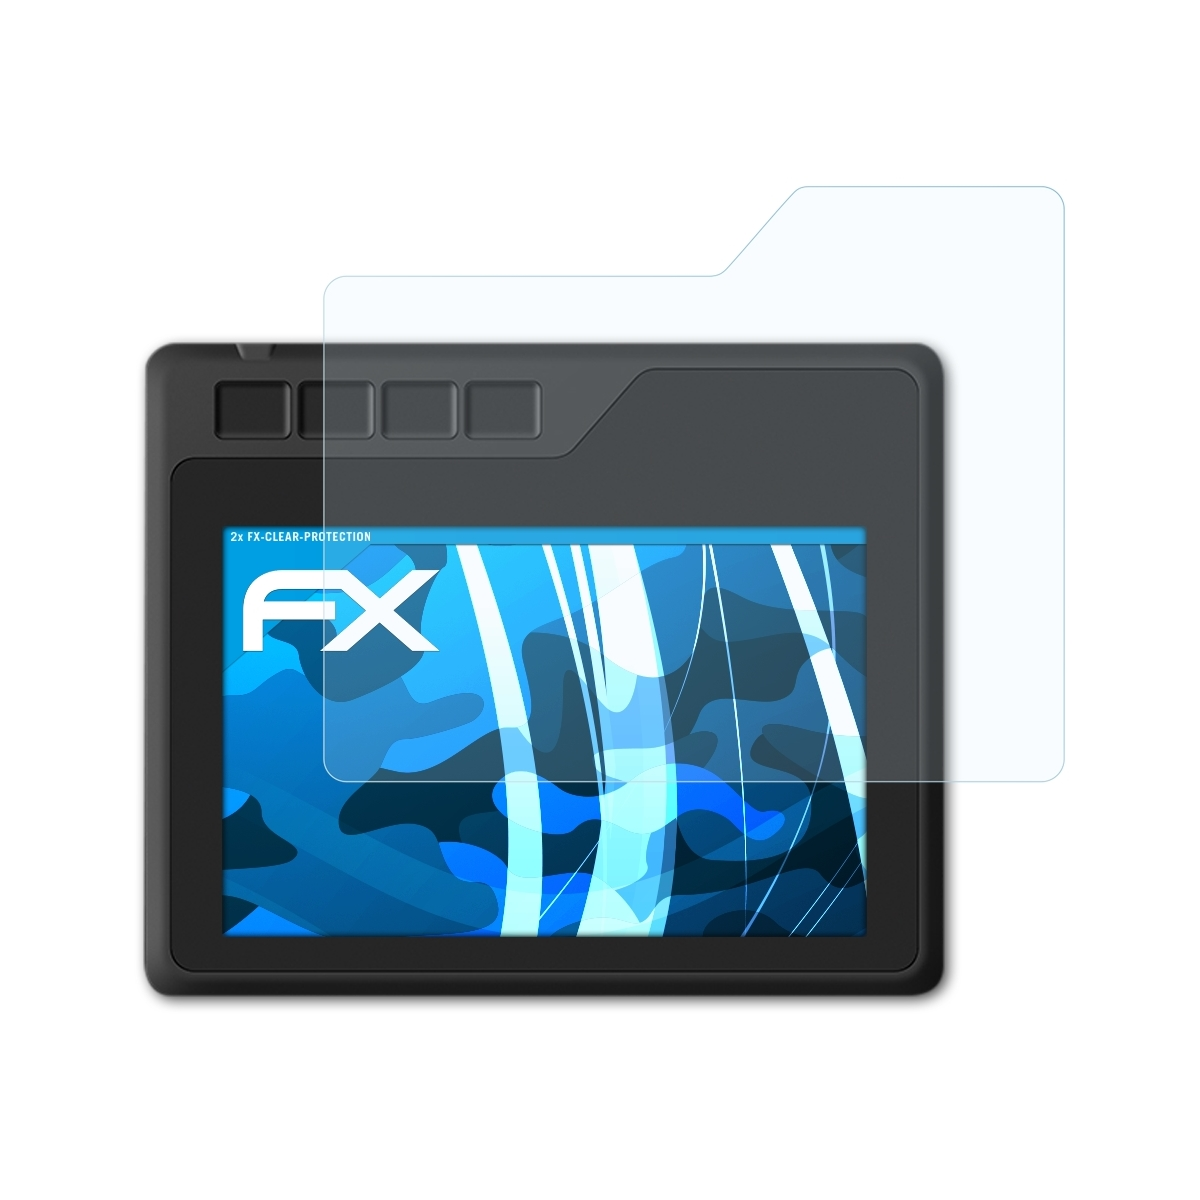 ATFOLIX 2x S620) FX-Clear Displayschutz(für Gaomon